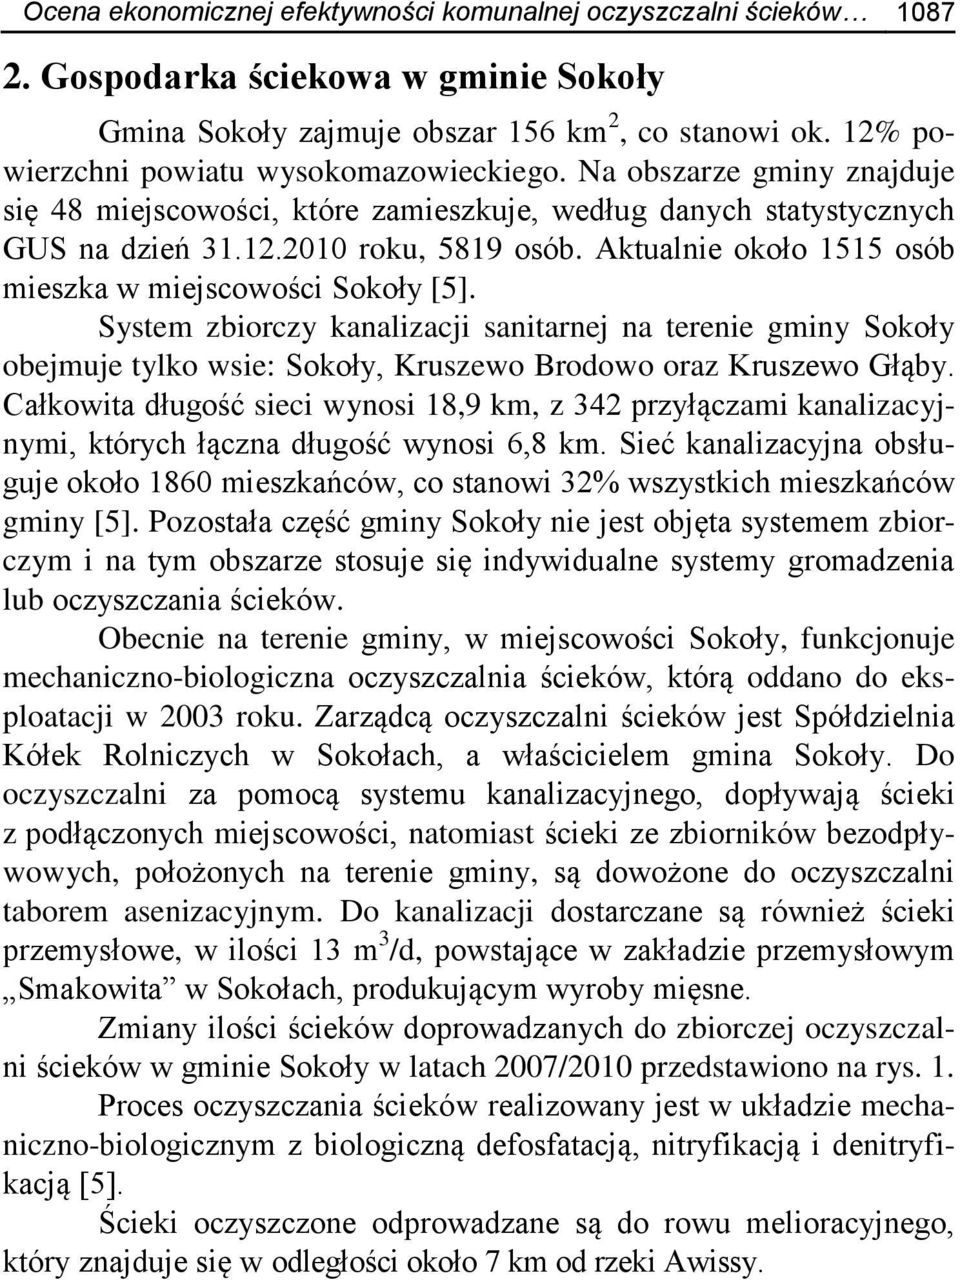 Aktualnie około 1515 osób mieszka w miejscowości Sokoły [5]. System zbiorczy kanalizacji sanitarnej na terenie gminy Sokoły obejmuje tylko wsie: Sokoły, Kruszewo Brodowo oraz Kruszewo Głąby.